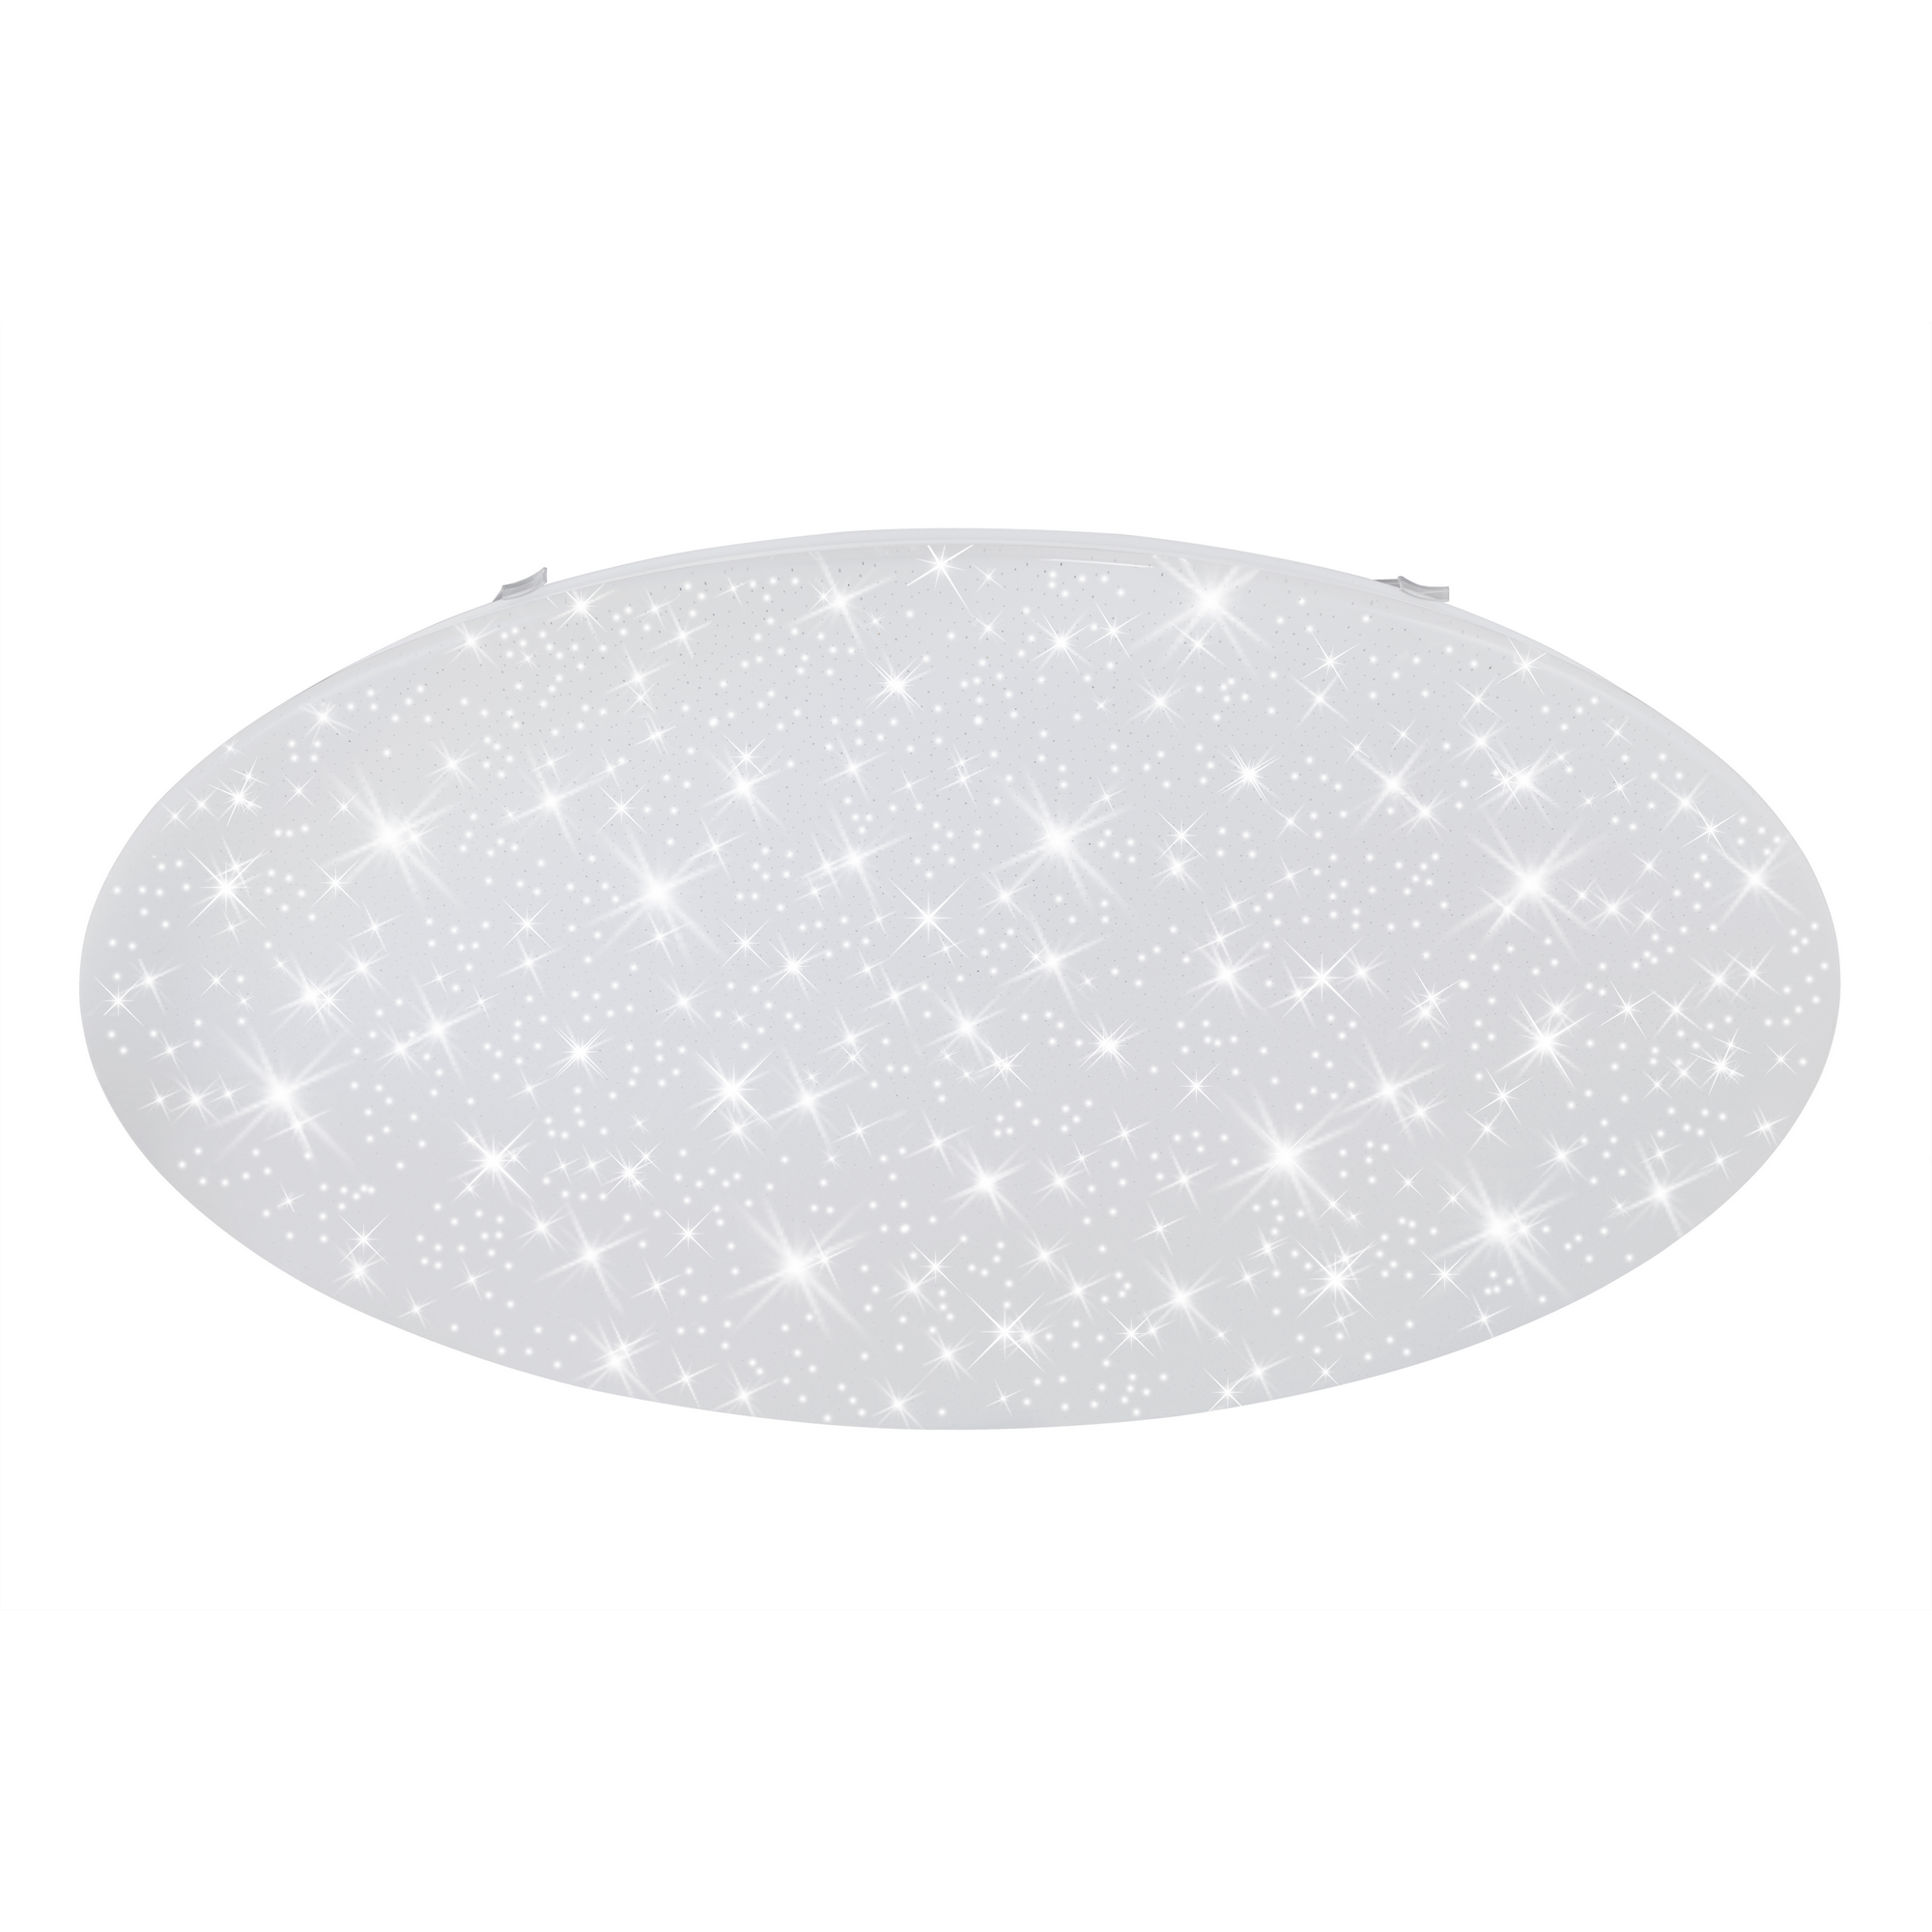 LED-Deckenleuchte 'Verb' weiß Ø 75,5 x 11,8 cm 4000 lm, mit Nachtlichtfunktion + product picture